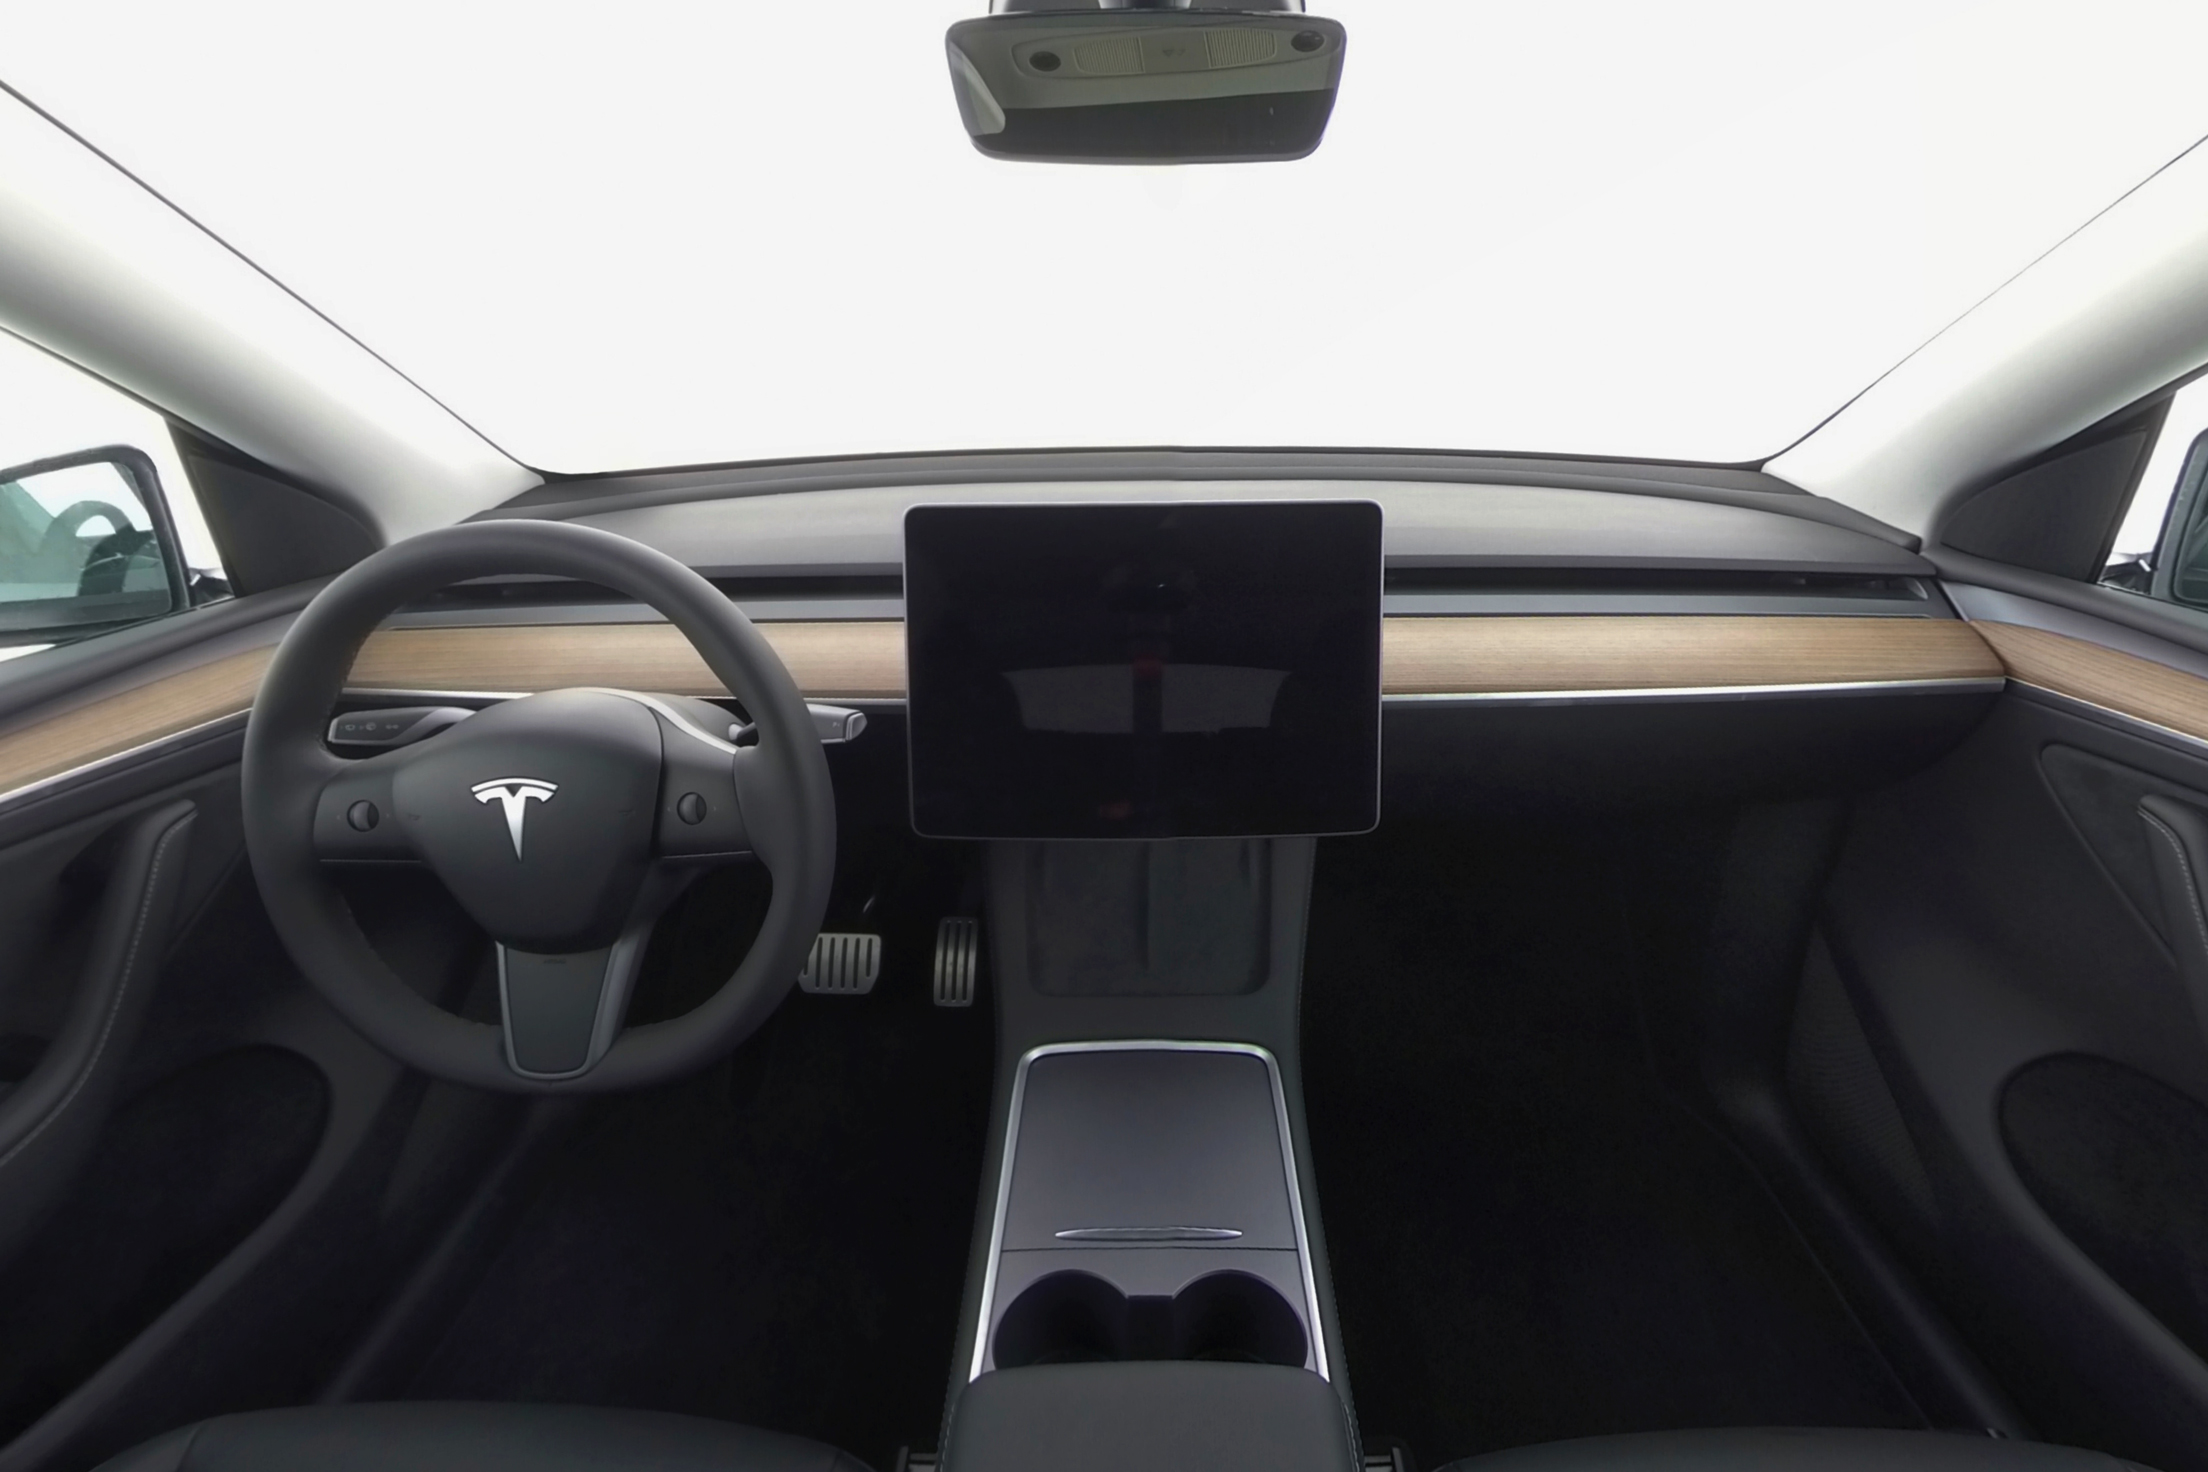 Twinner_Tesla_Y_in-car_frontside